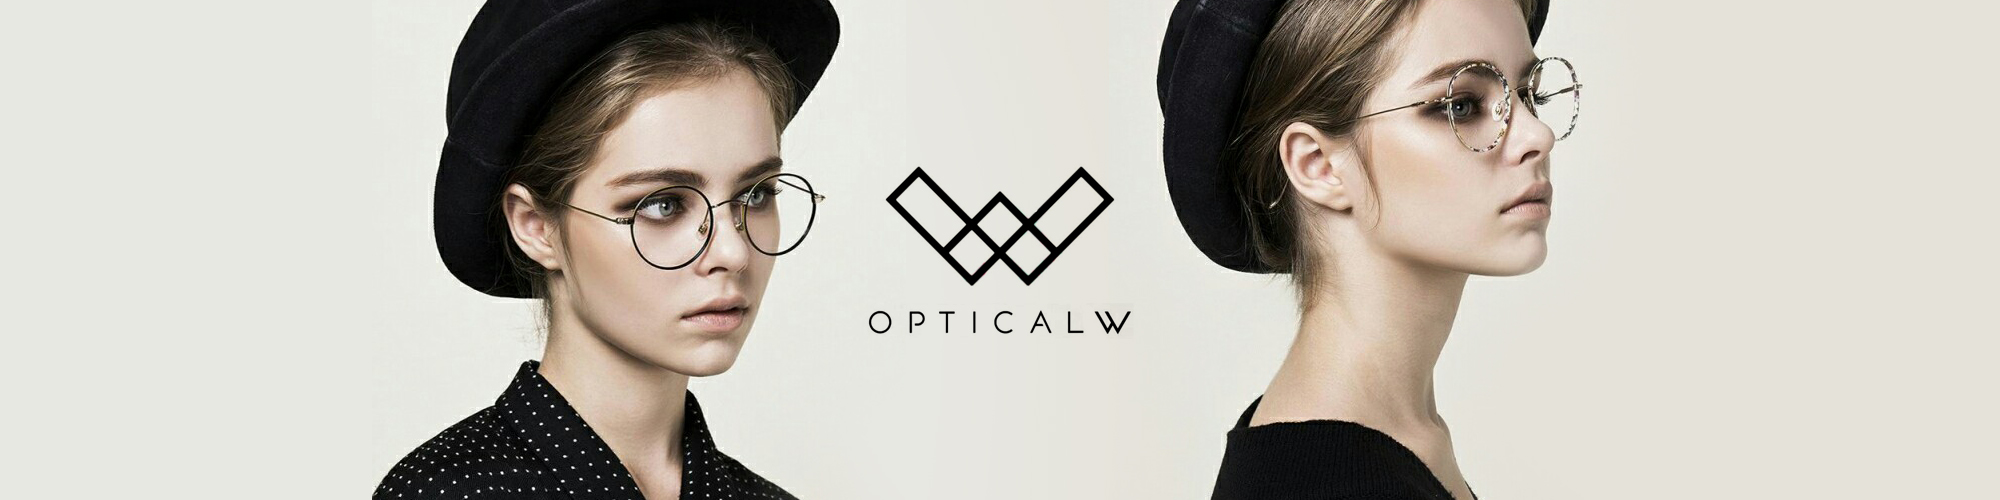 OpticalW